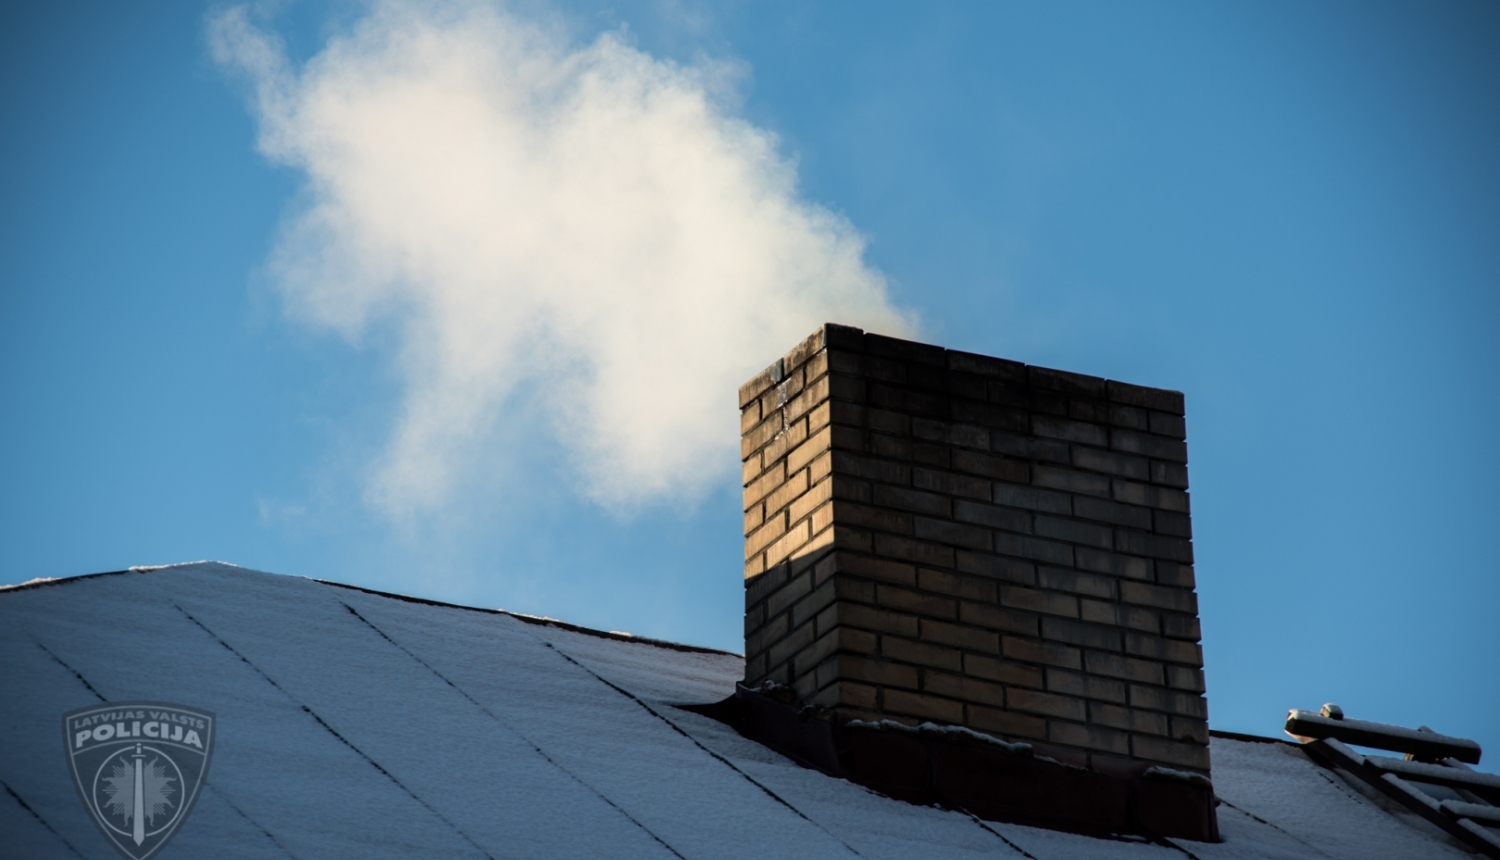 Apsnidzis mājas jumts, no skursteņa kūp dūmi